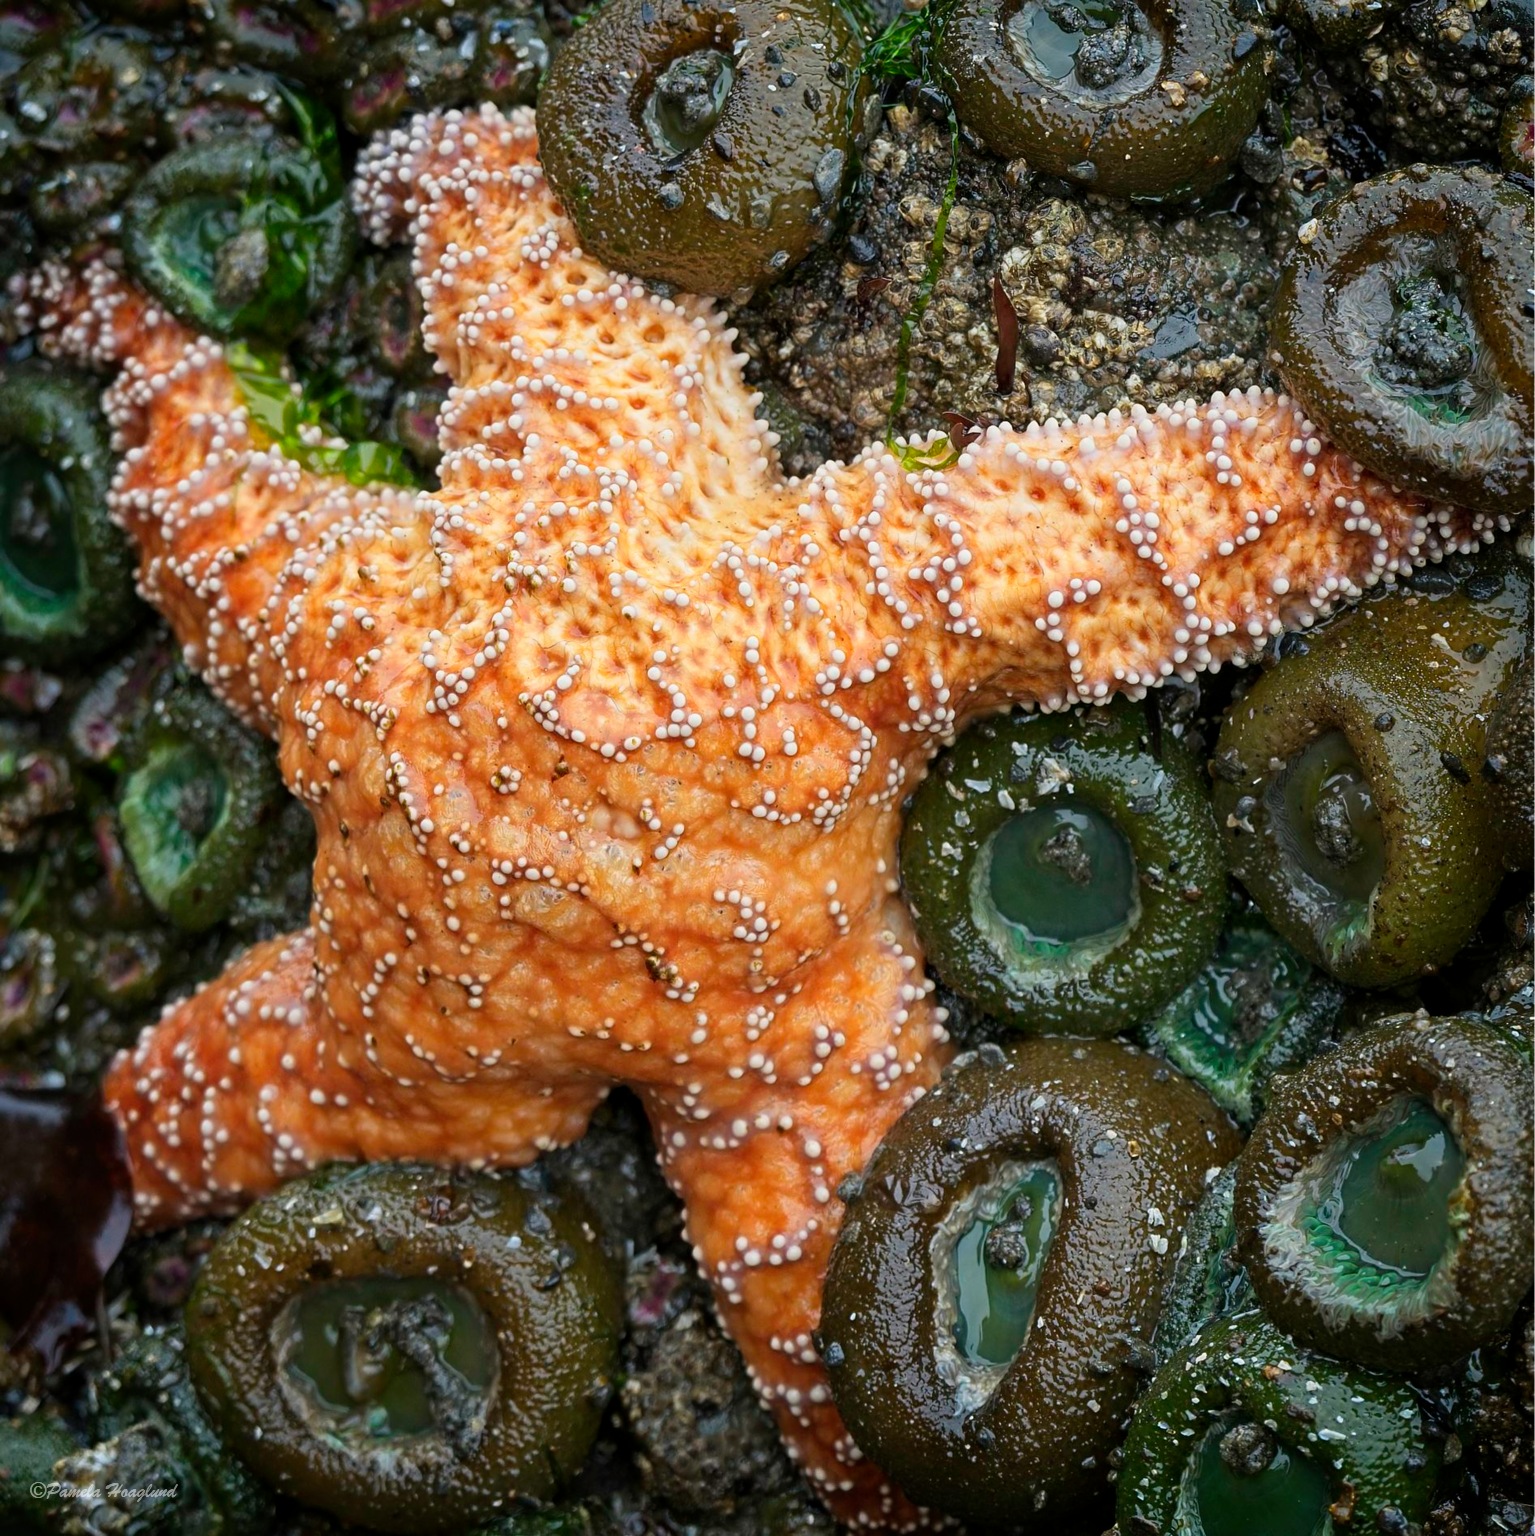 Starfish and Sea Anemone by Pamela Hoaglund